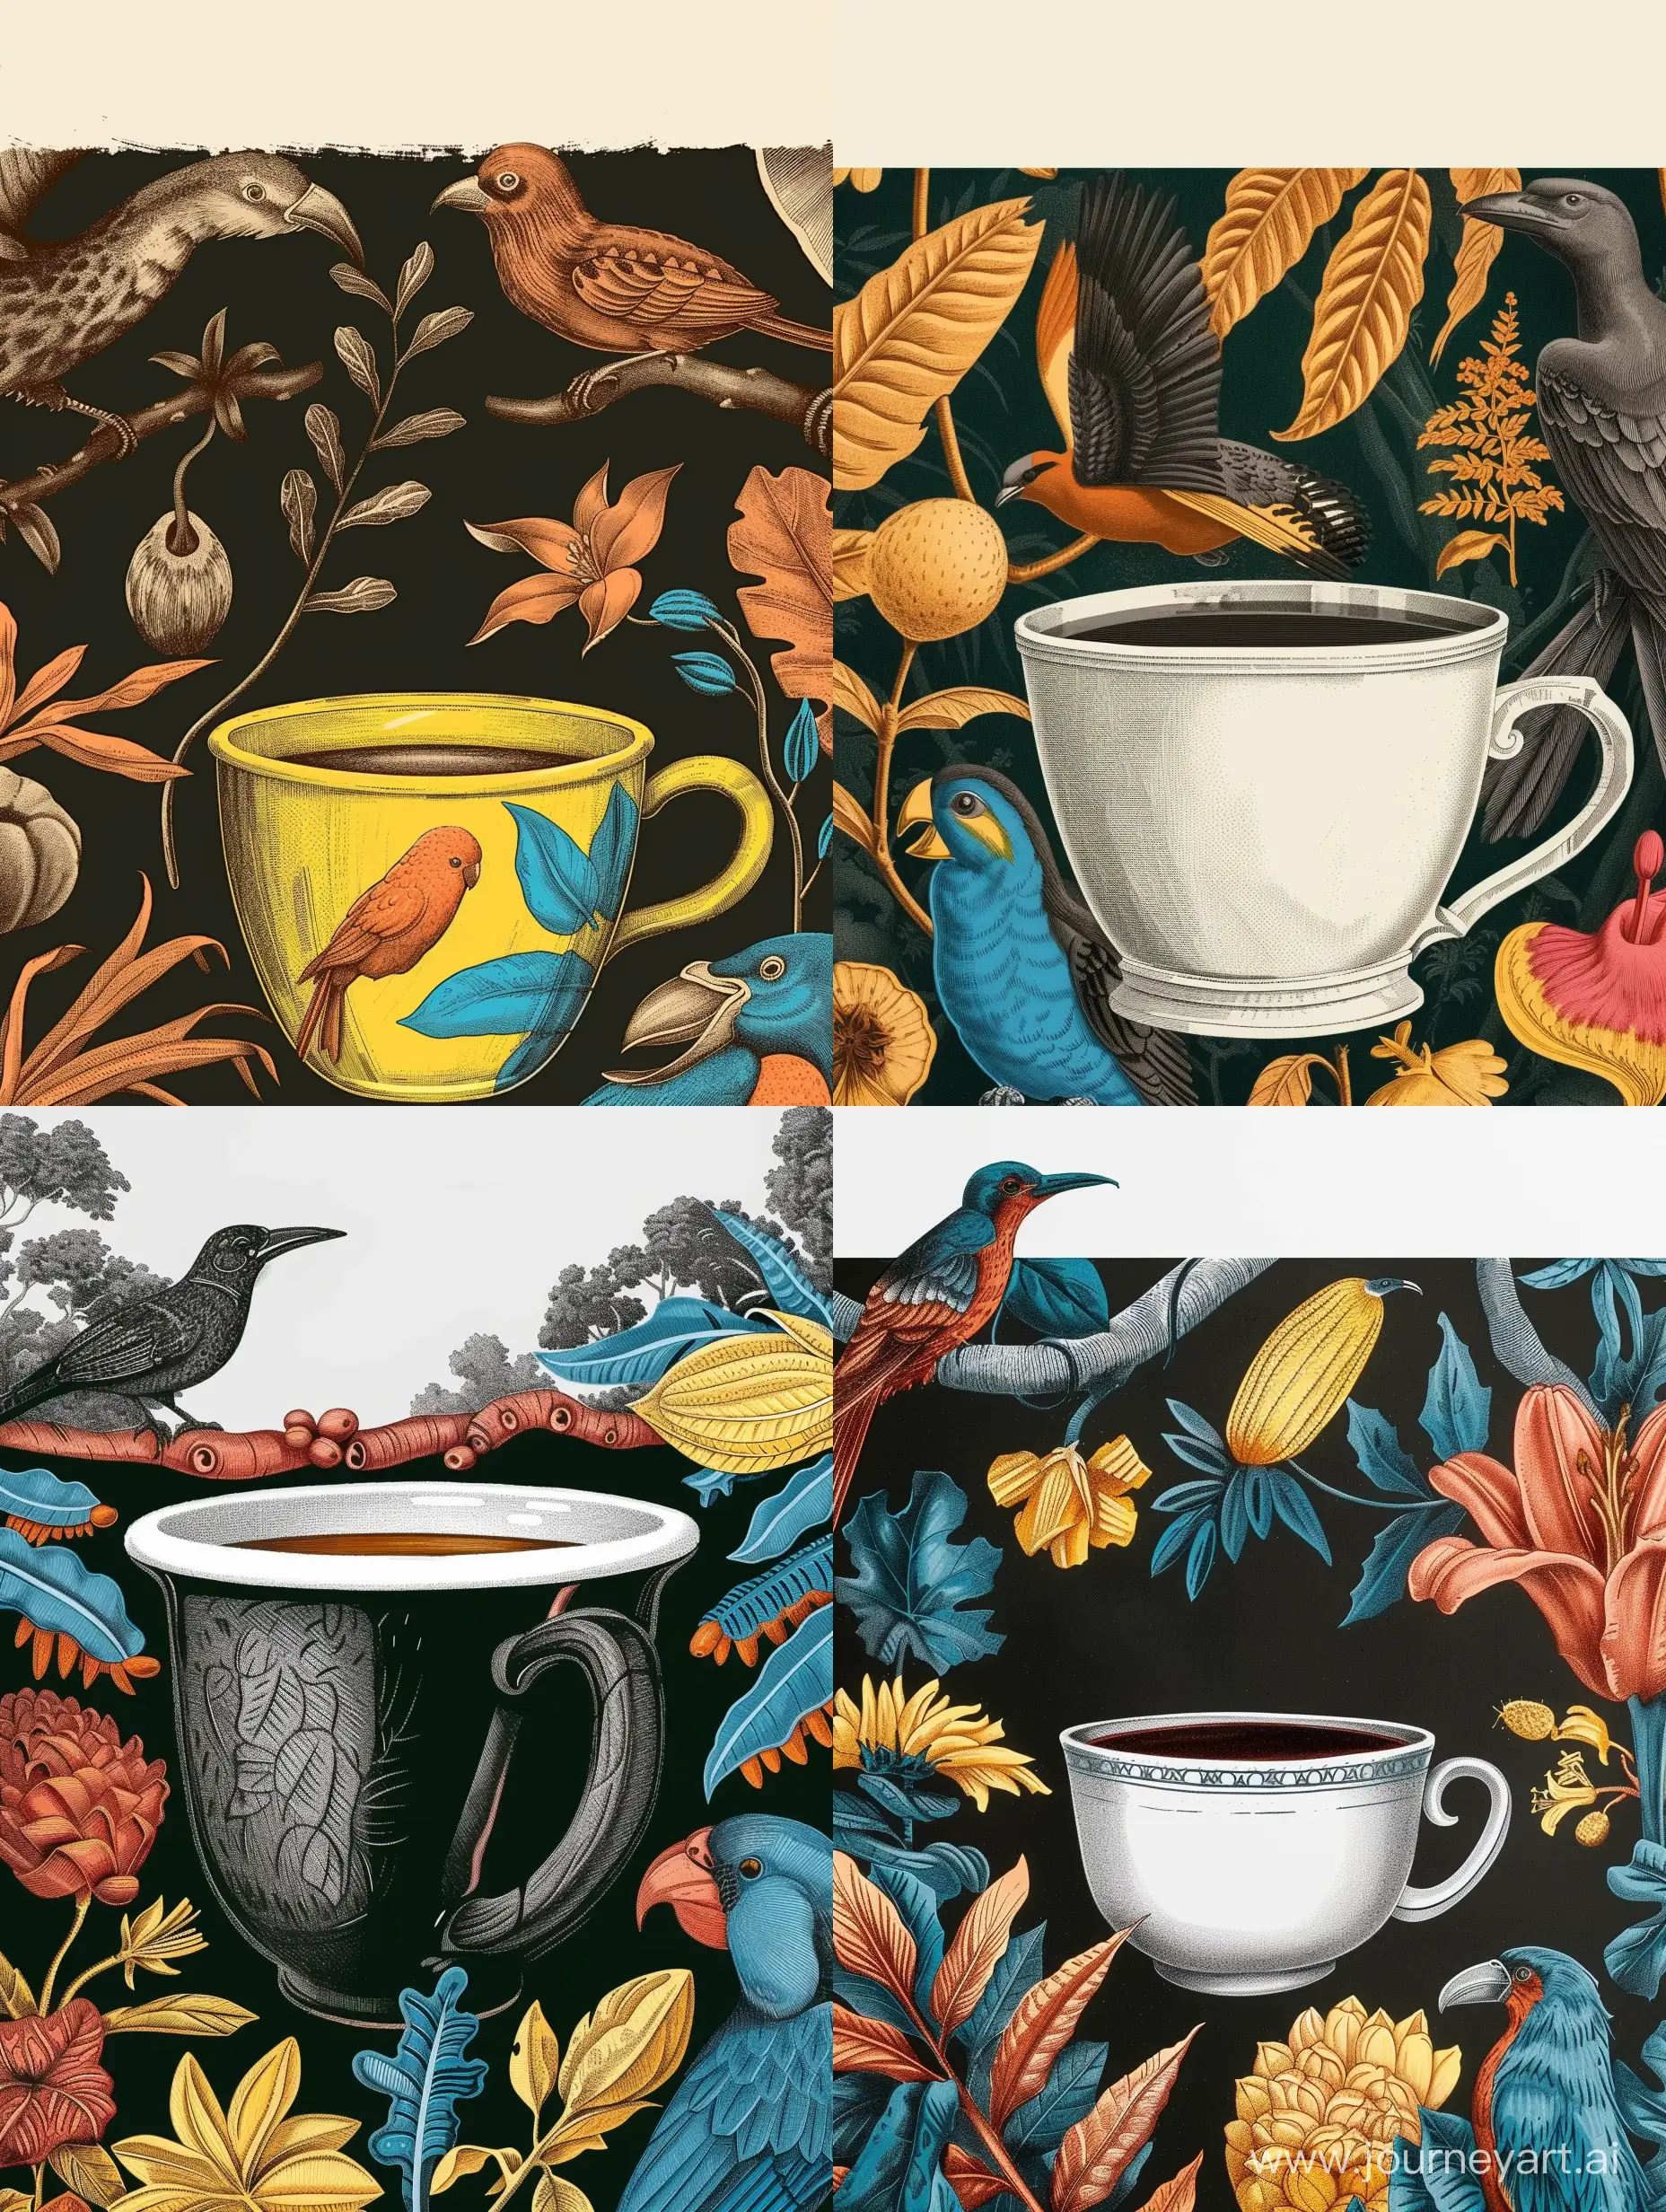 Иллюстрация чашка кофе на фоне природы Бразилии, животных, птиц и растений Бразилии, сверху однотонное пустое поле под надпись - serf https://i.pinimg.com/564x/79/bb/dd/79bbdd58e879d9243a18b7548461ad33.jpg